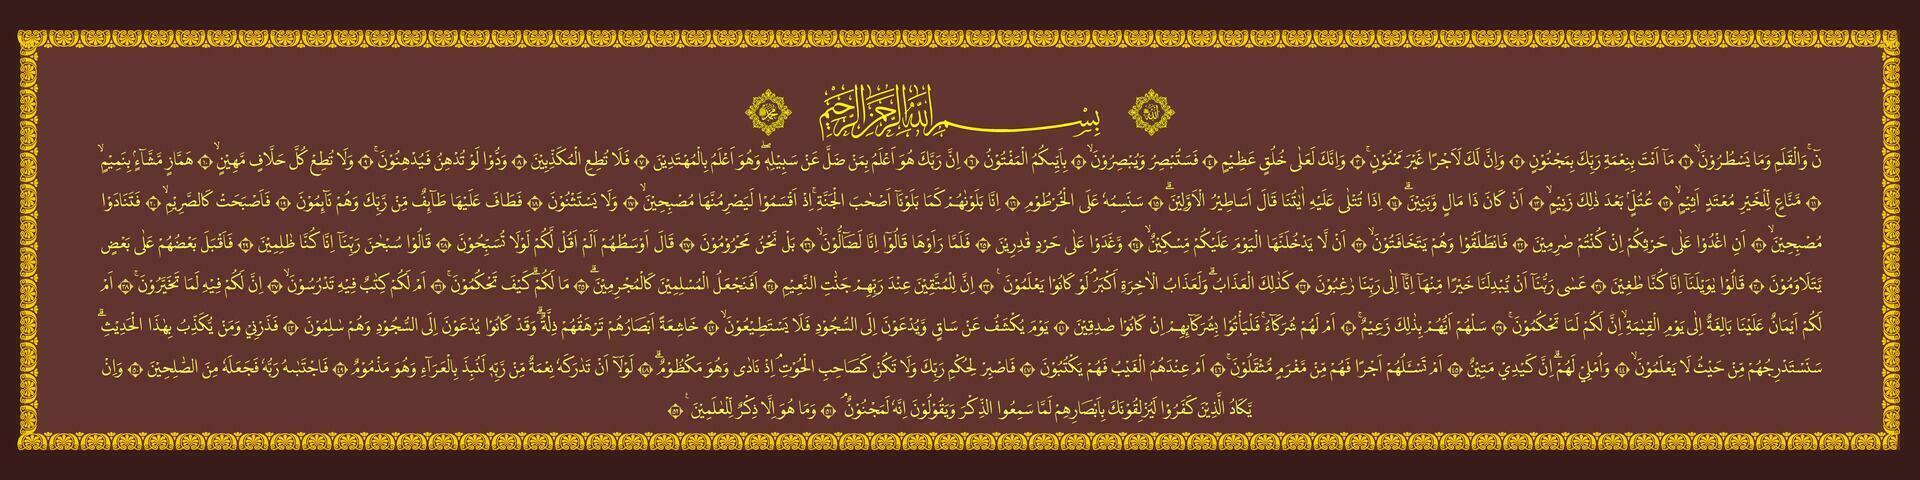 Arabisch schoonschrift van soera al qalam 1-52 welke middelen dat zelfs wel de koran is niets maar een waarschuwing naar allemaal natuur. vector